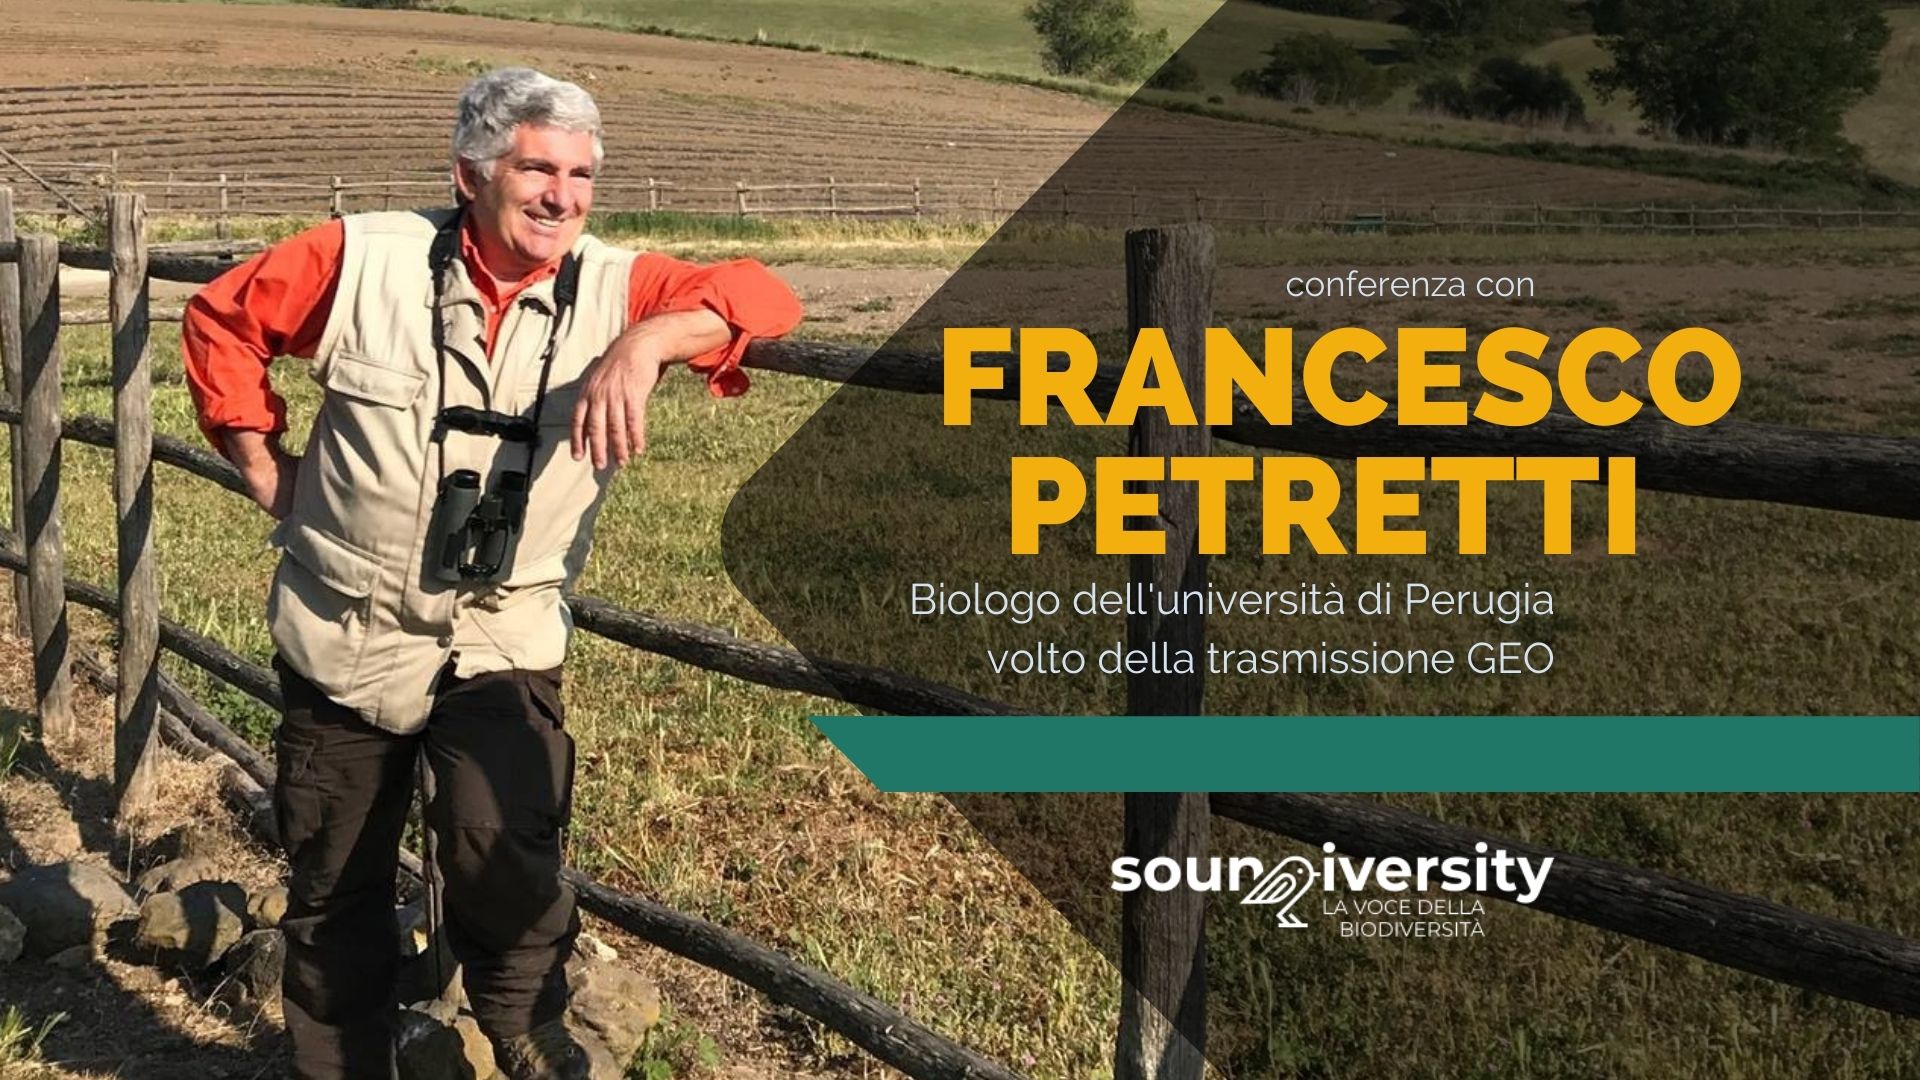 Soundiversity: Primavera silenziosa - Incontro con Francesco Petretti a Schio (VI)